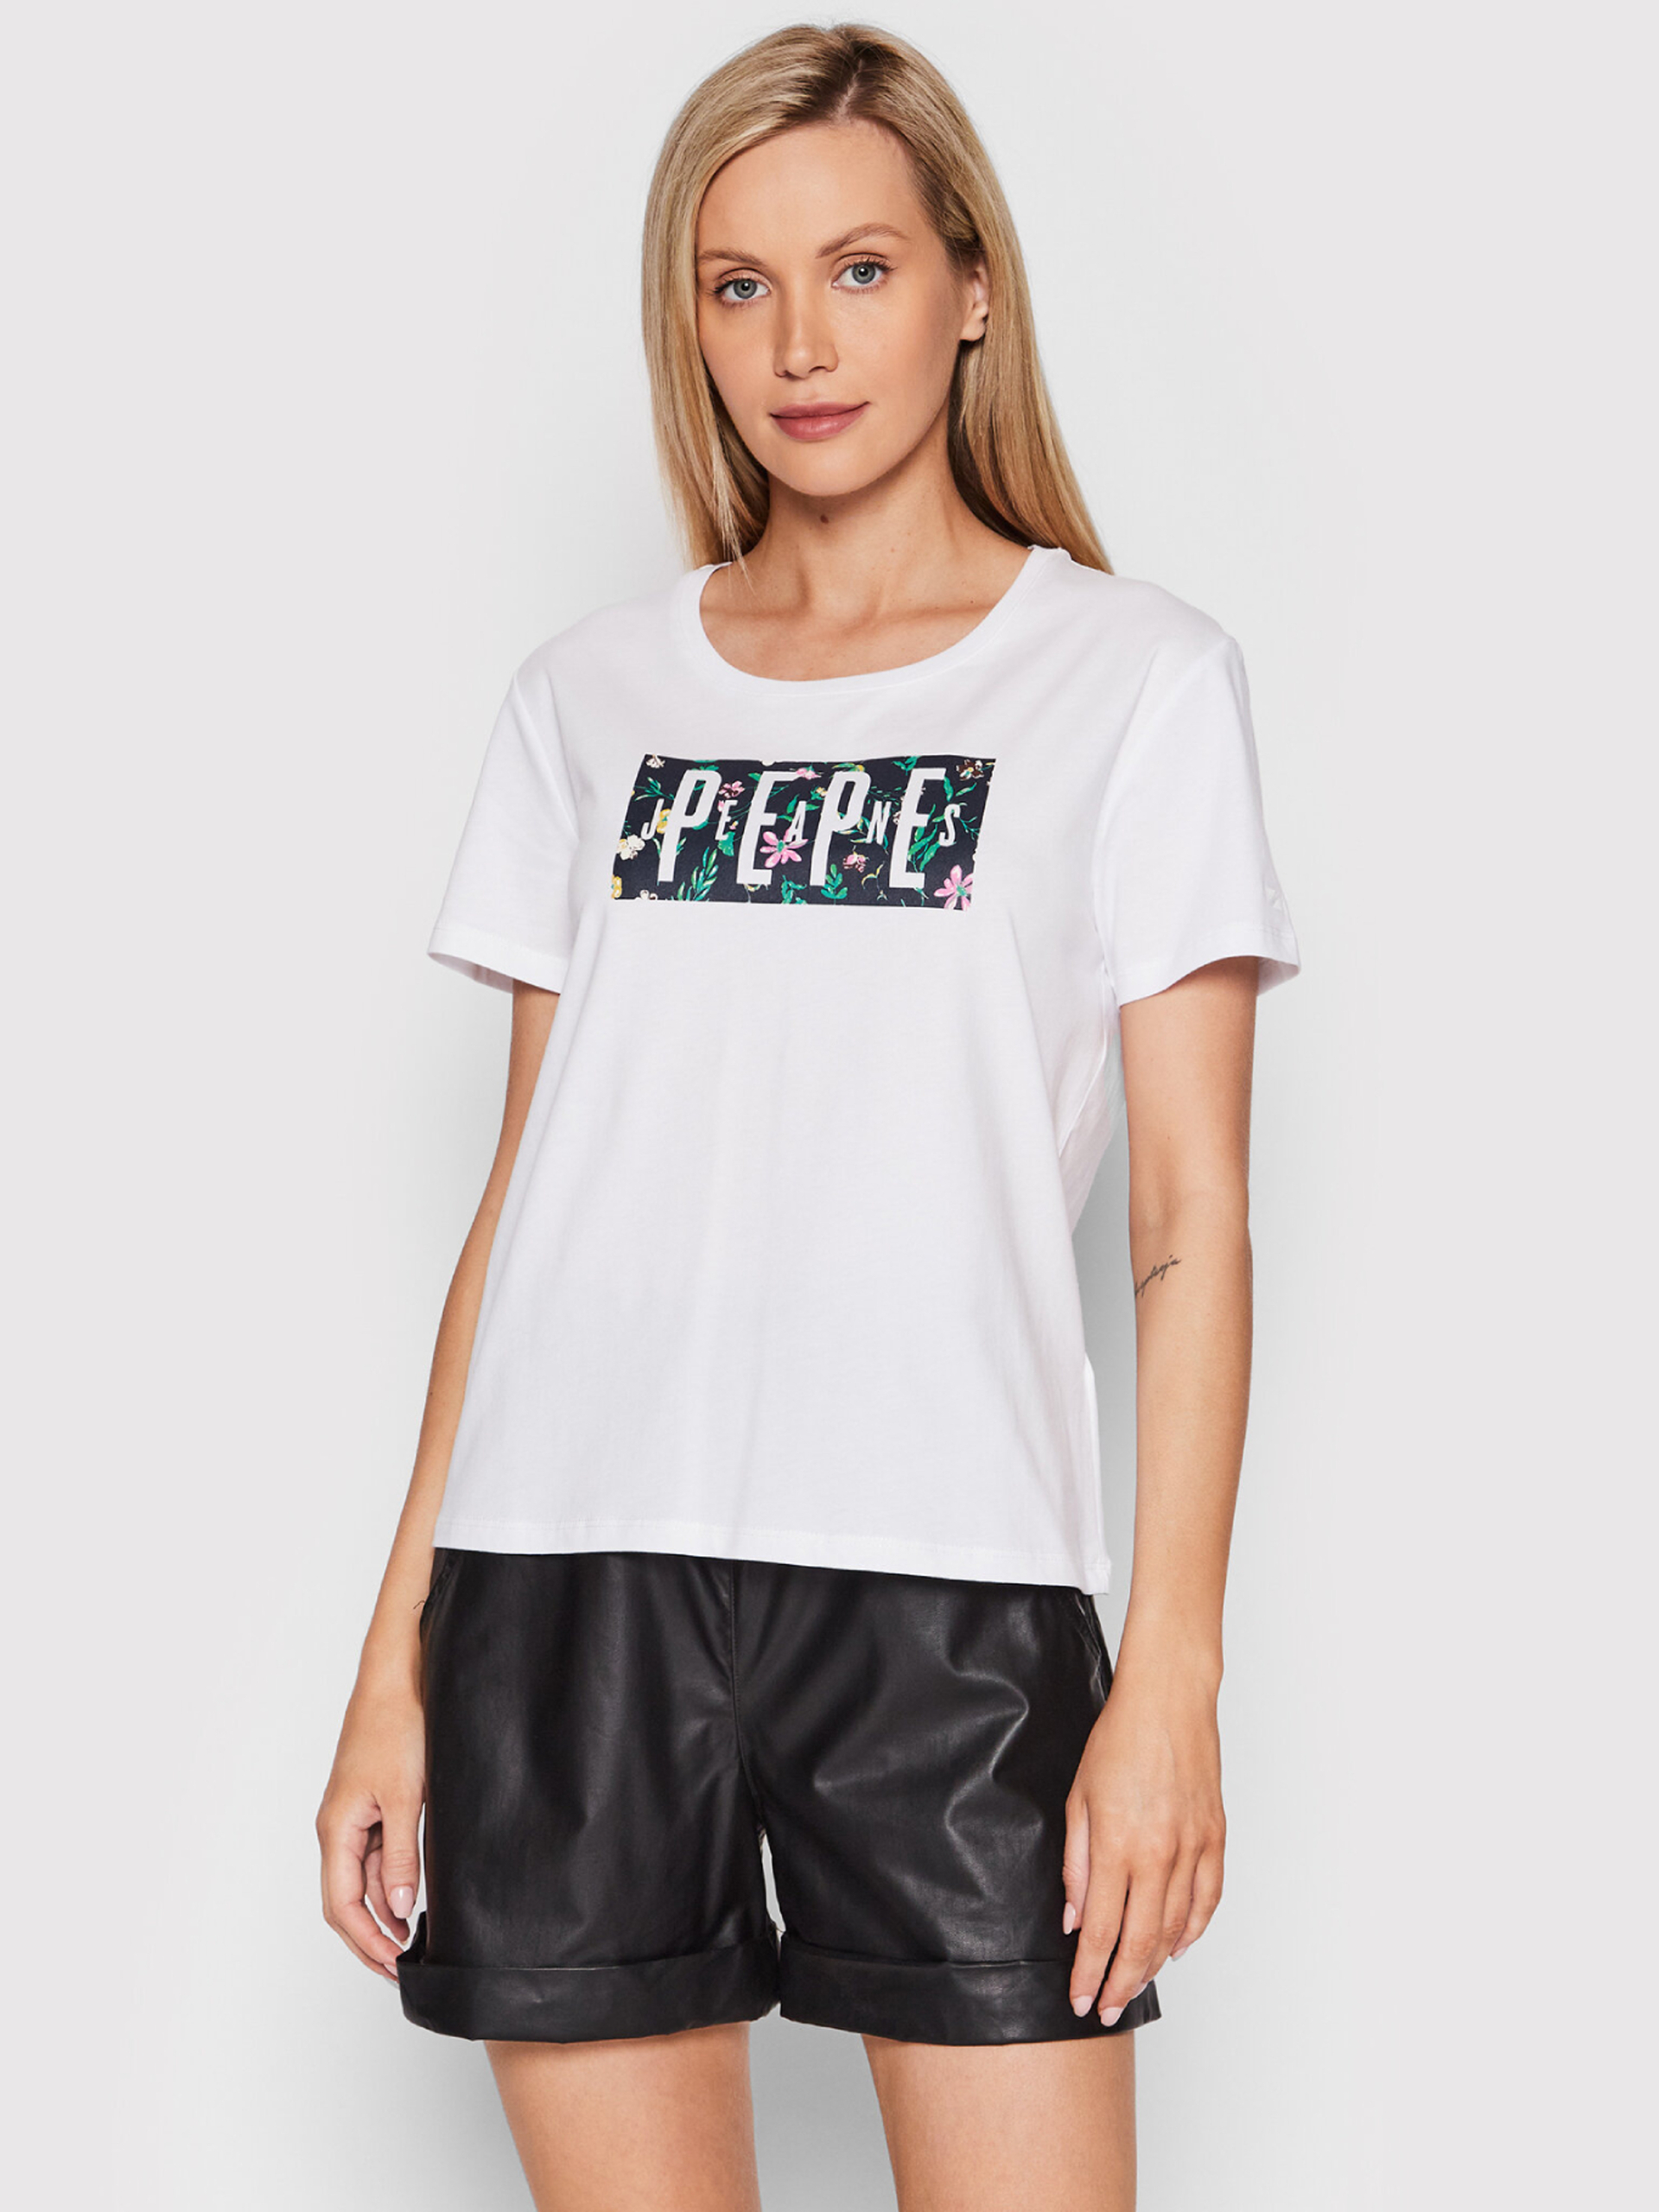 Pepe Jeans dámské bílé tričko Patsy - S (800)